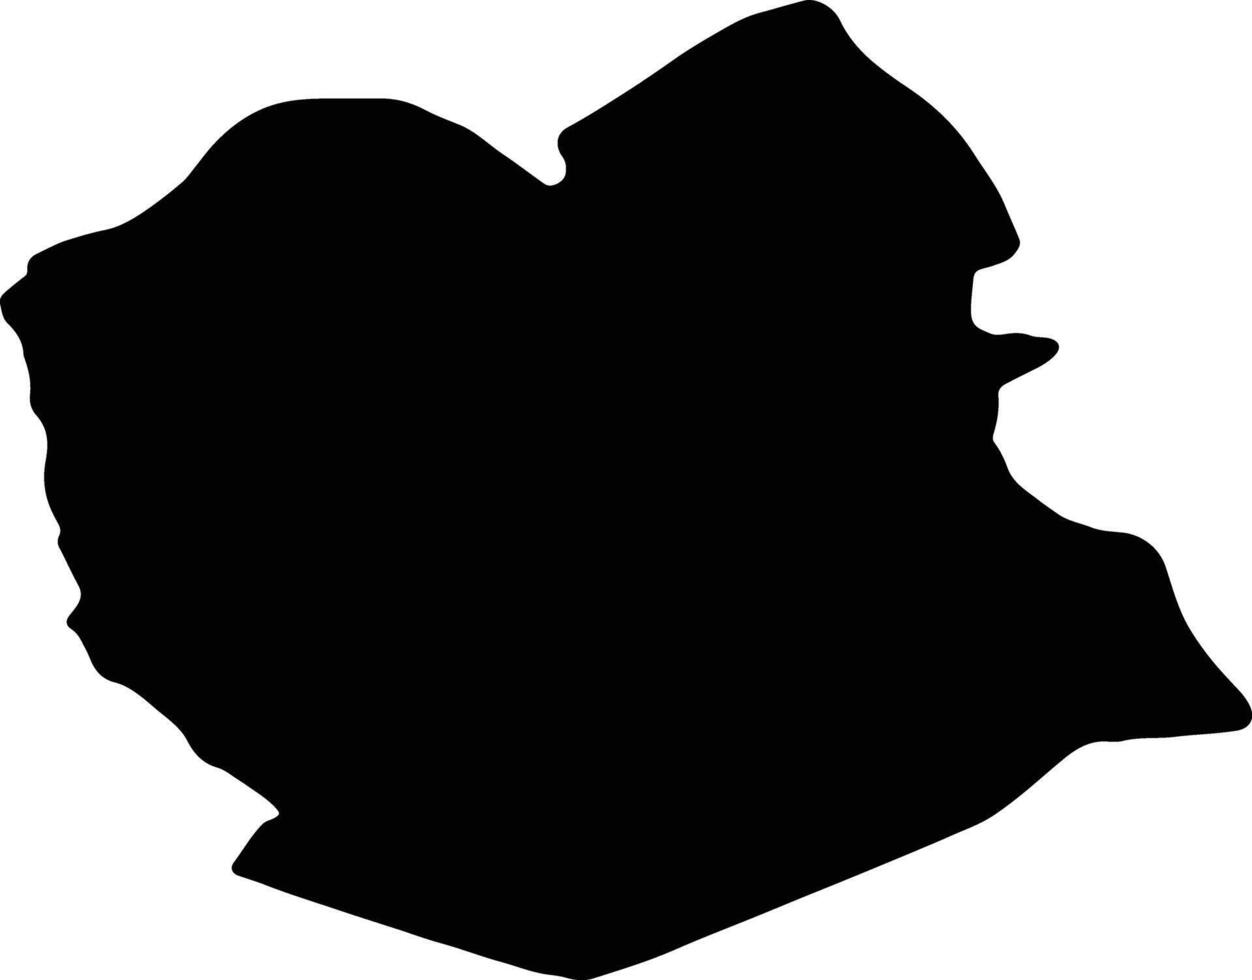 Oruro Bolivia silhouette map vector